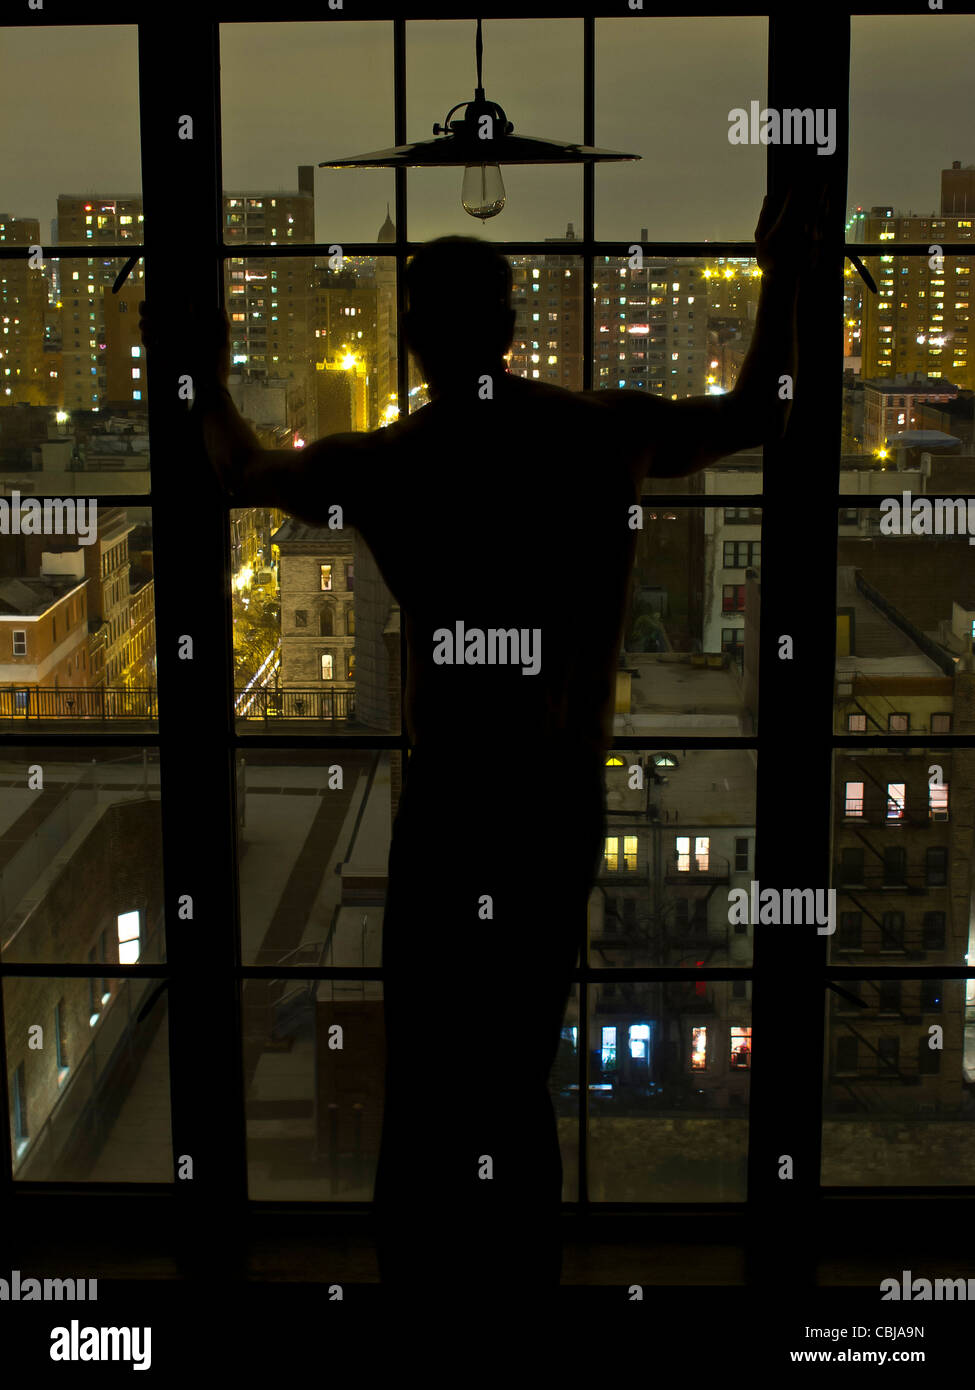 Silhouette of Man à la nuit de la fenêtre donnant sur sw, New York State, USA Banque D'Images